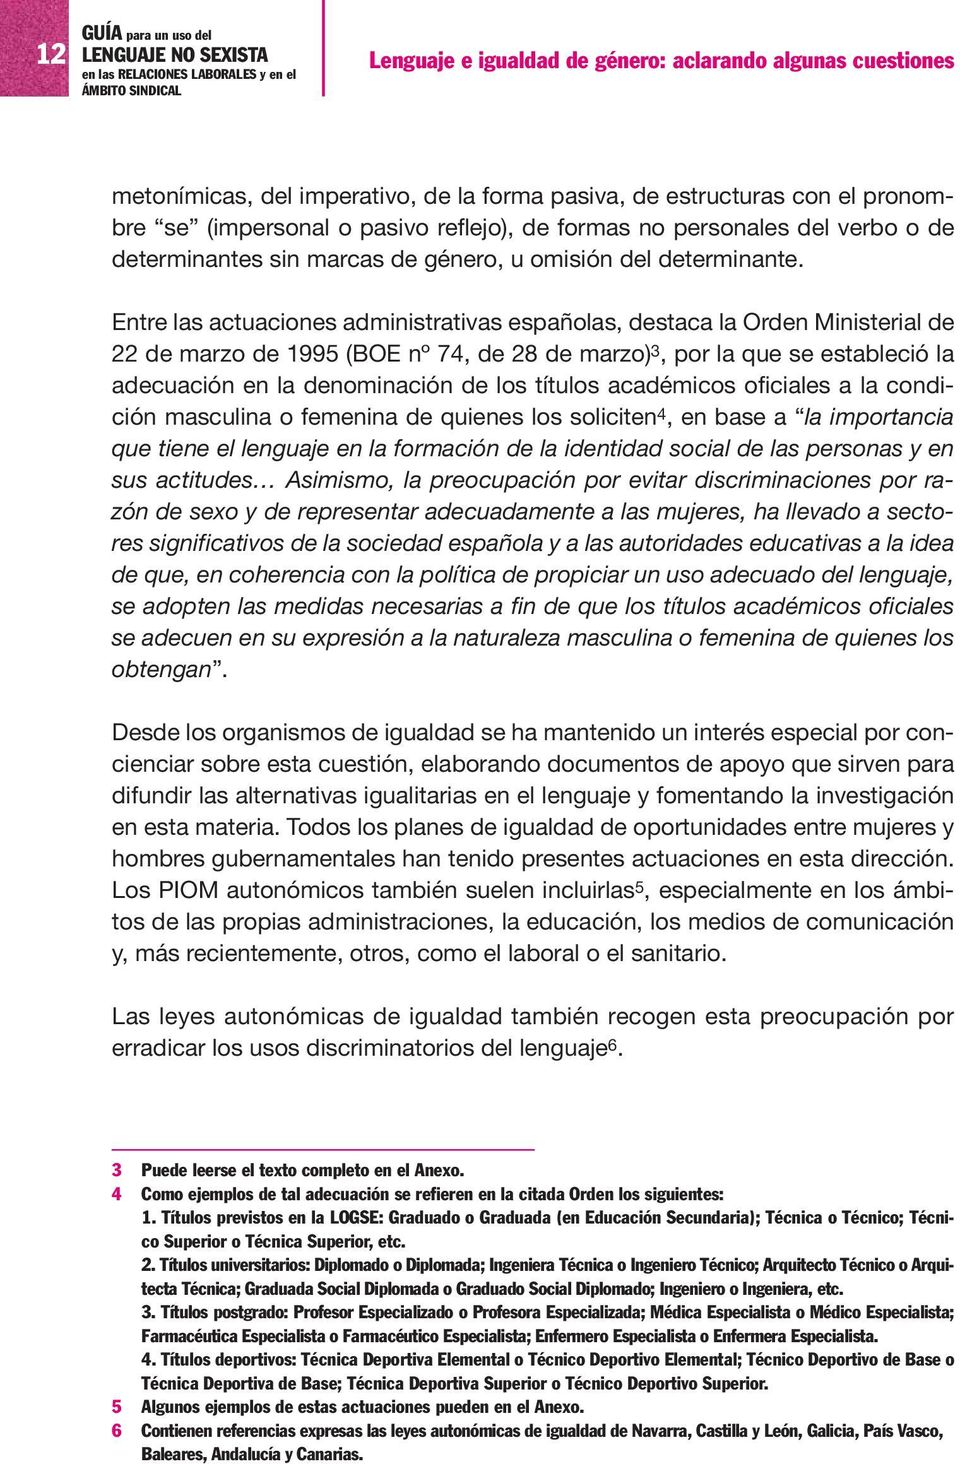 Entre las actuaciones administrativas españolas, destaca la Orden Ministerial de 22 de marzo de 1995 (BOE nº 74, de 28 de marzo) 3, por la que se estableció la adecuación en la denominación de los